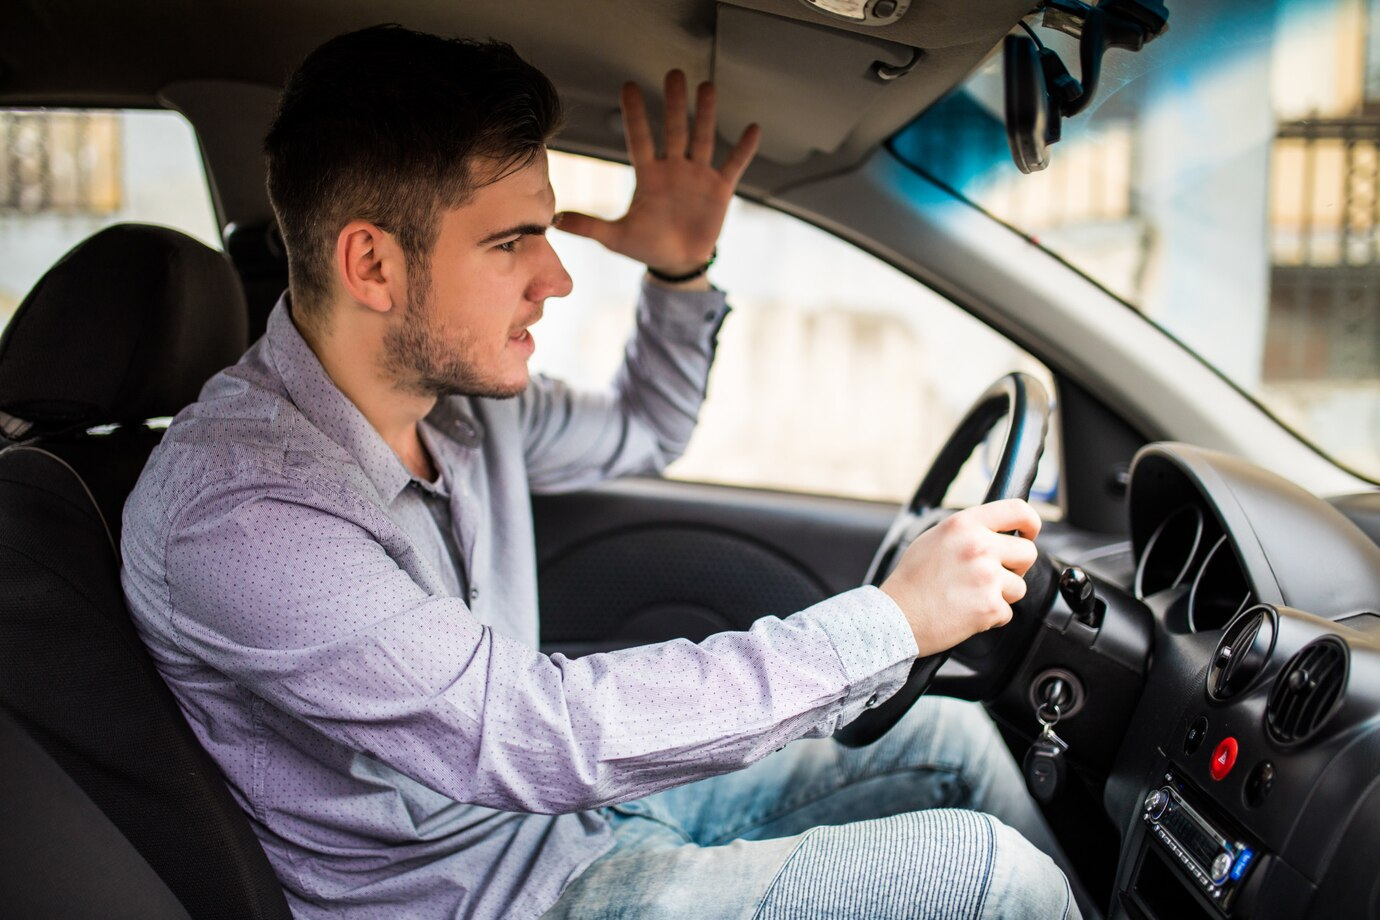 Imagem mostra um homem, aparentemente irritado, dirigindo um carro.